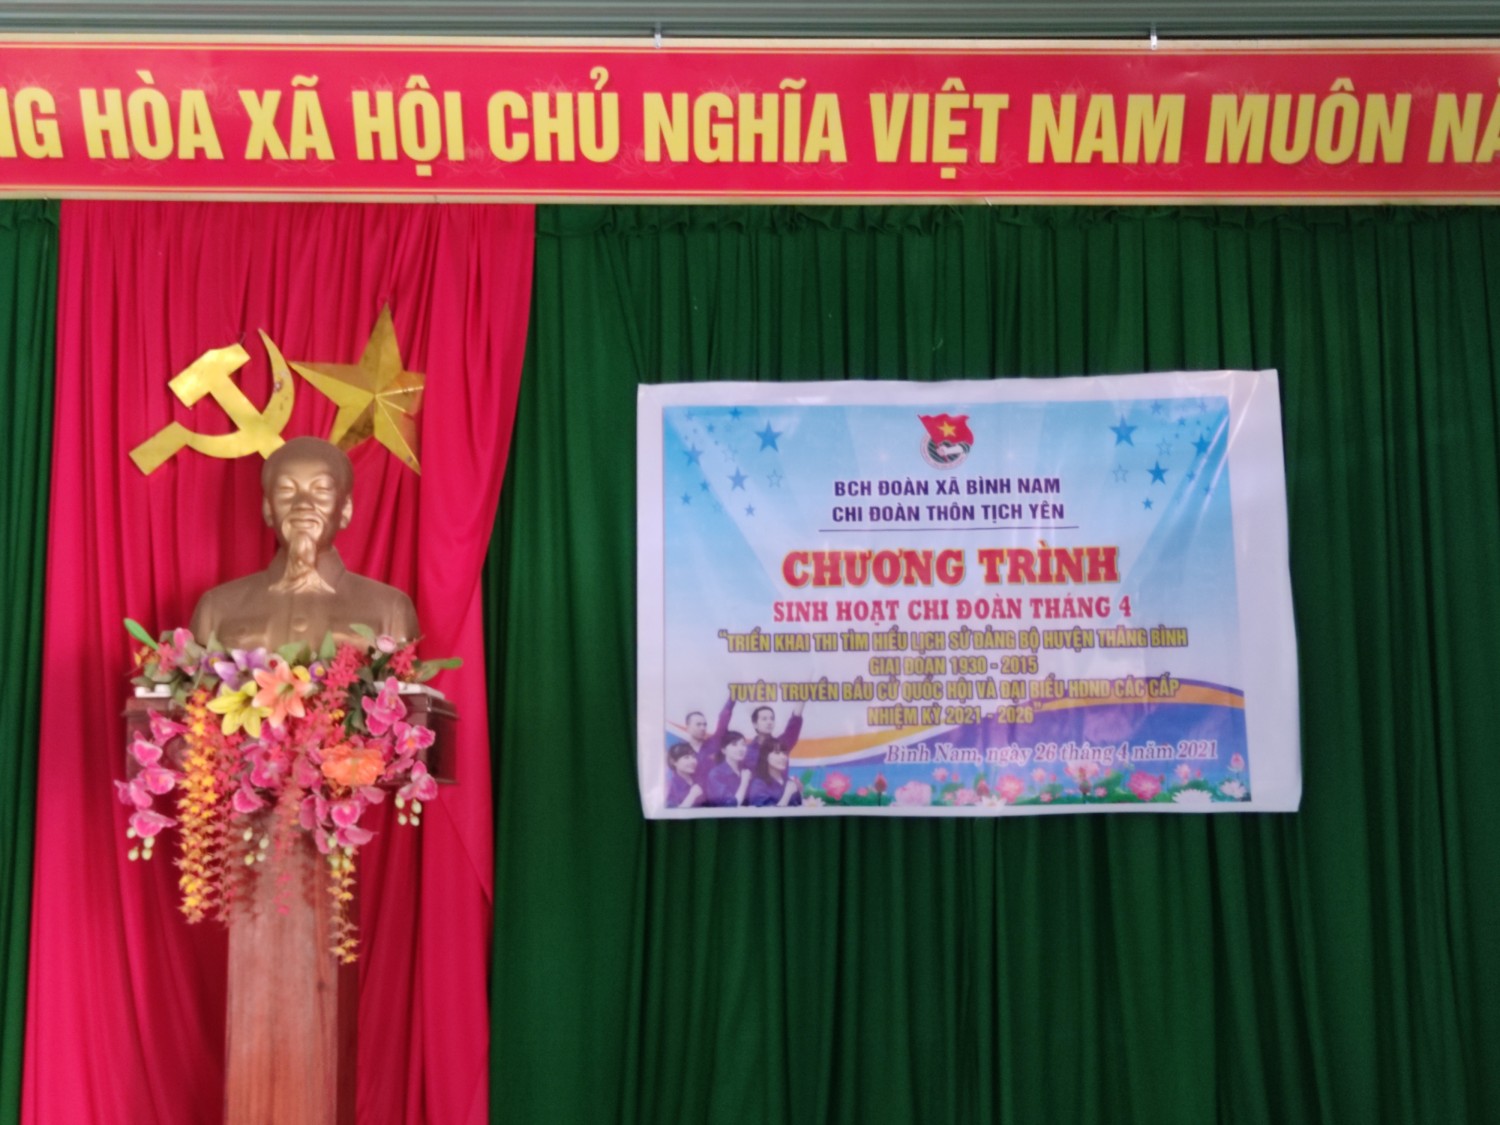 Bình Nam: Chi đoàn Tịch Yên tổ chức sinh hoạt chi đoàn tháng 4